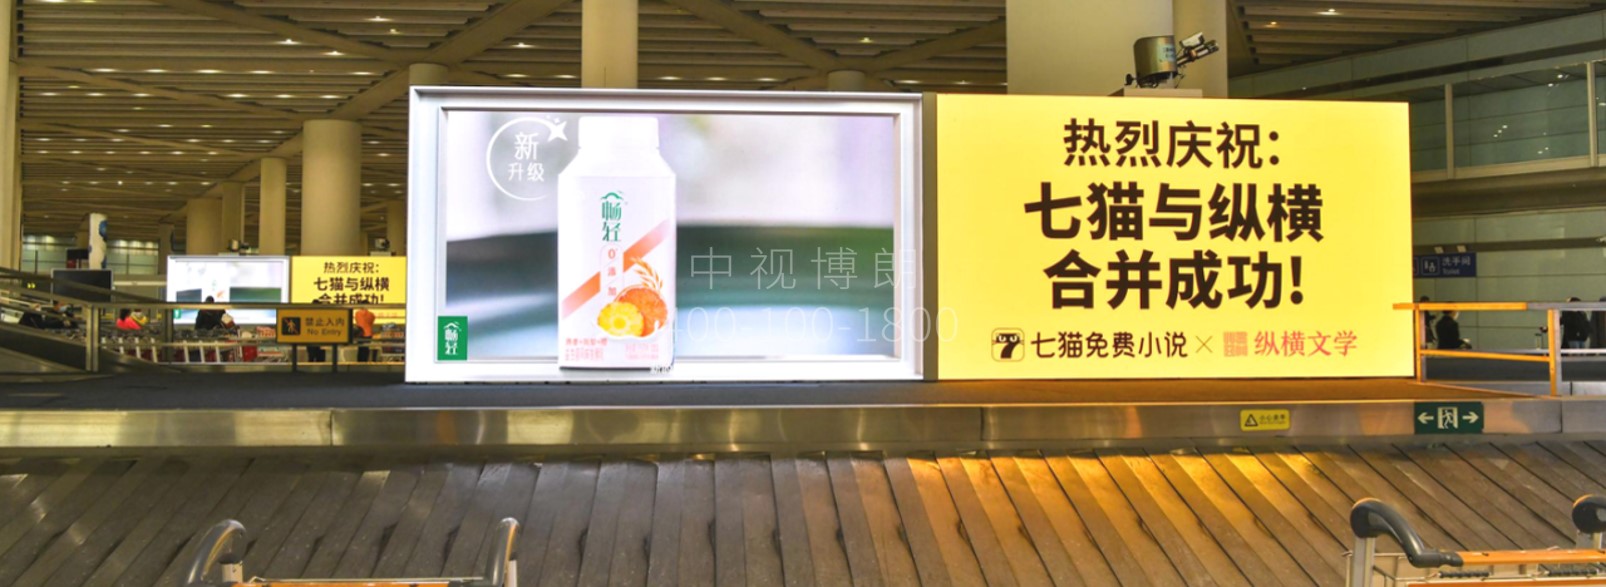 北京首都机场广告-T3国内到达行李厅LED屏套装